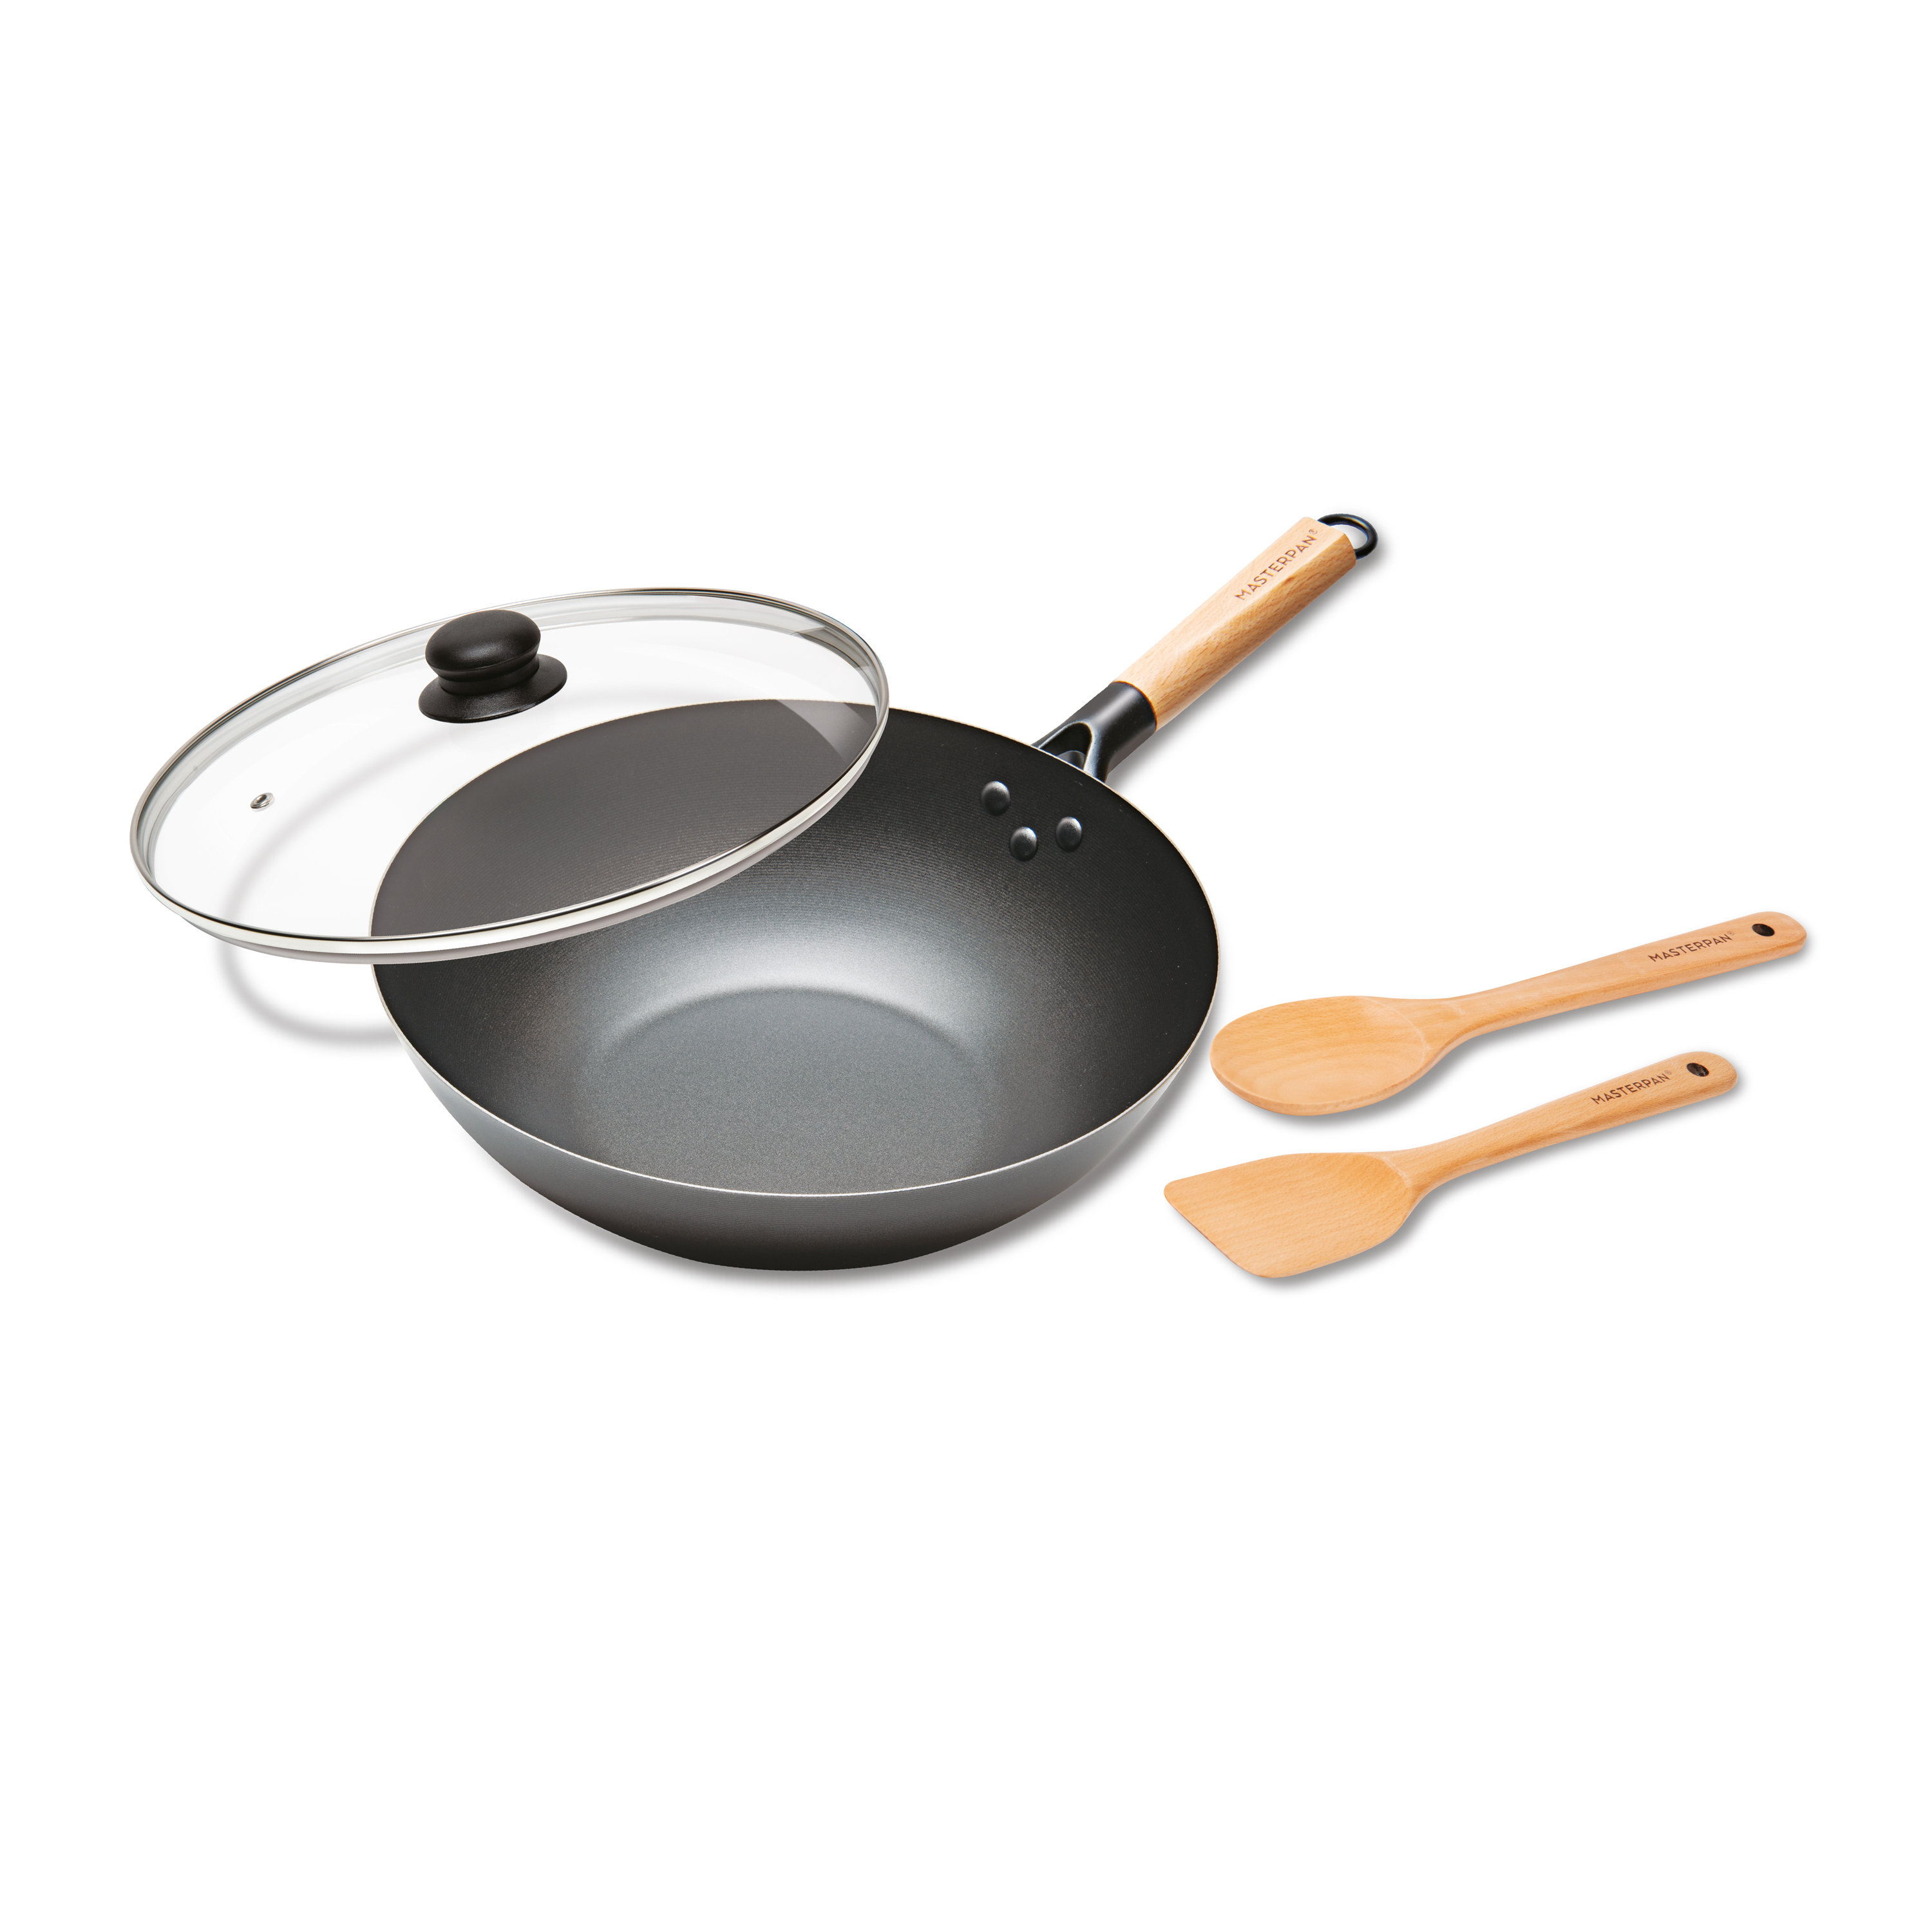 https://assets.wfcdn.com/im/12038787/compr-r85/2290/229051666/masterpan-carbon-steel-wok-with-glass-lid-wooden-utensils-non-stick-flat-bottom-asian-stir-fry.jpg